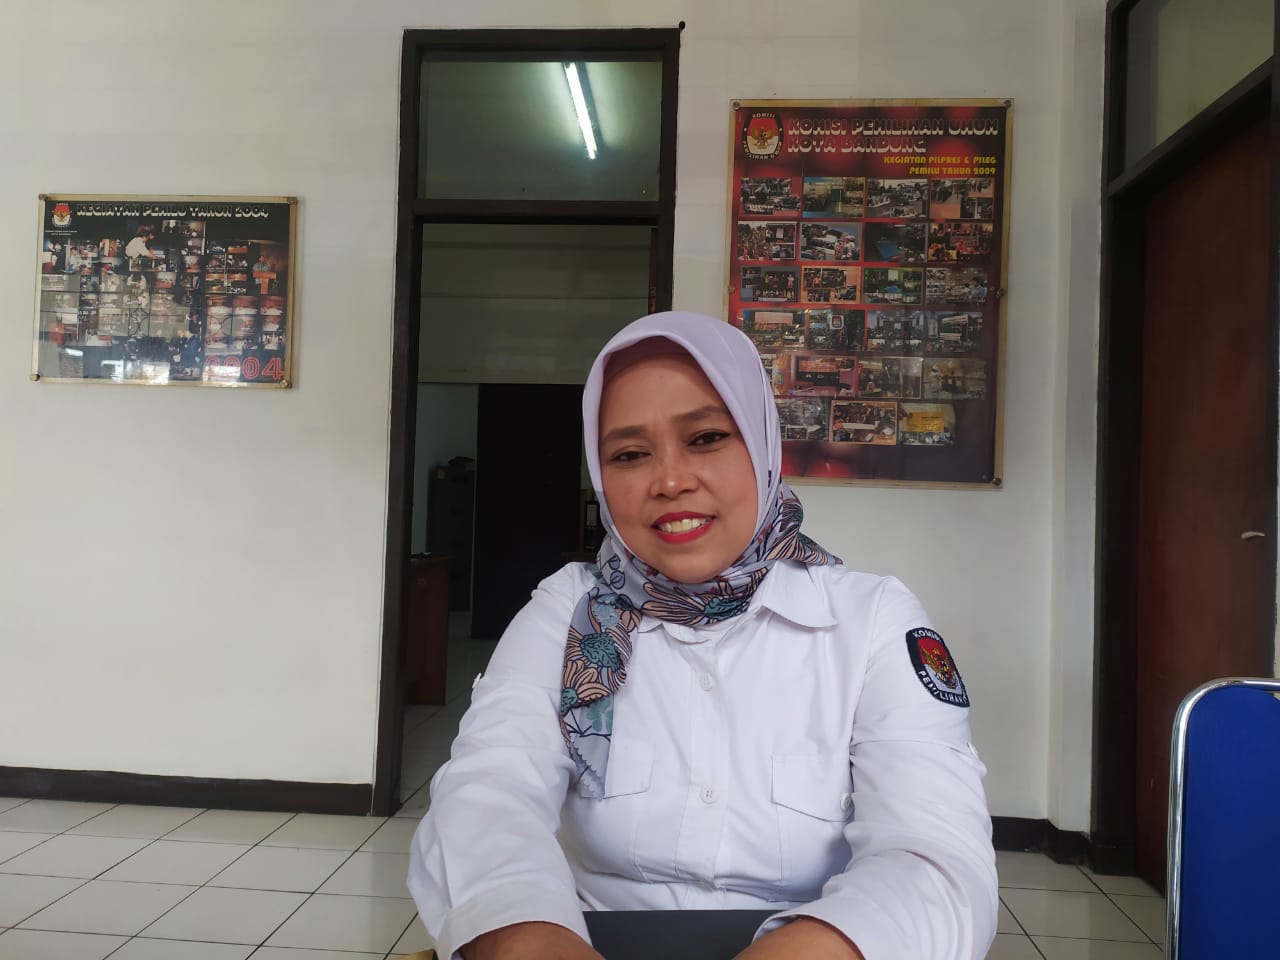 Pemilih Distabilitas di Kota Bandung 10.101 Orang, KPU Kota Bandung Pastikan TPS Ramah bagi Masyarakat Berkebutuhan Khusus